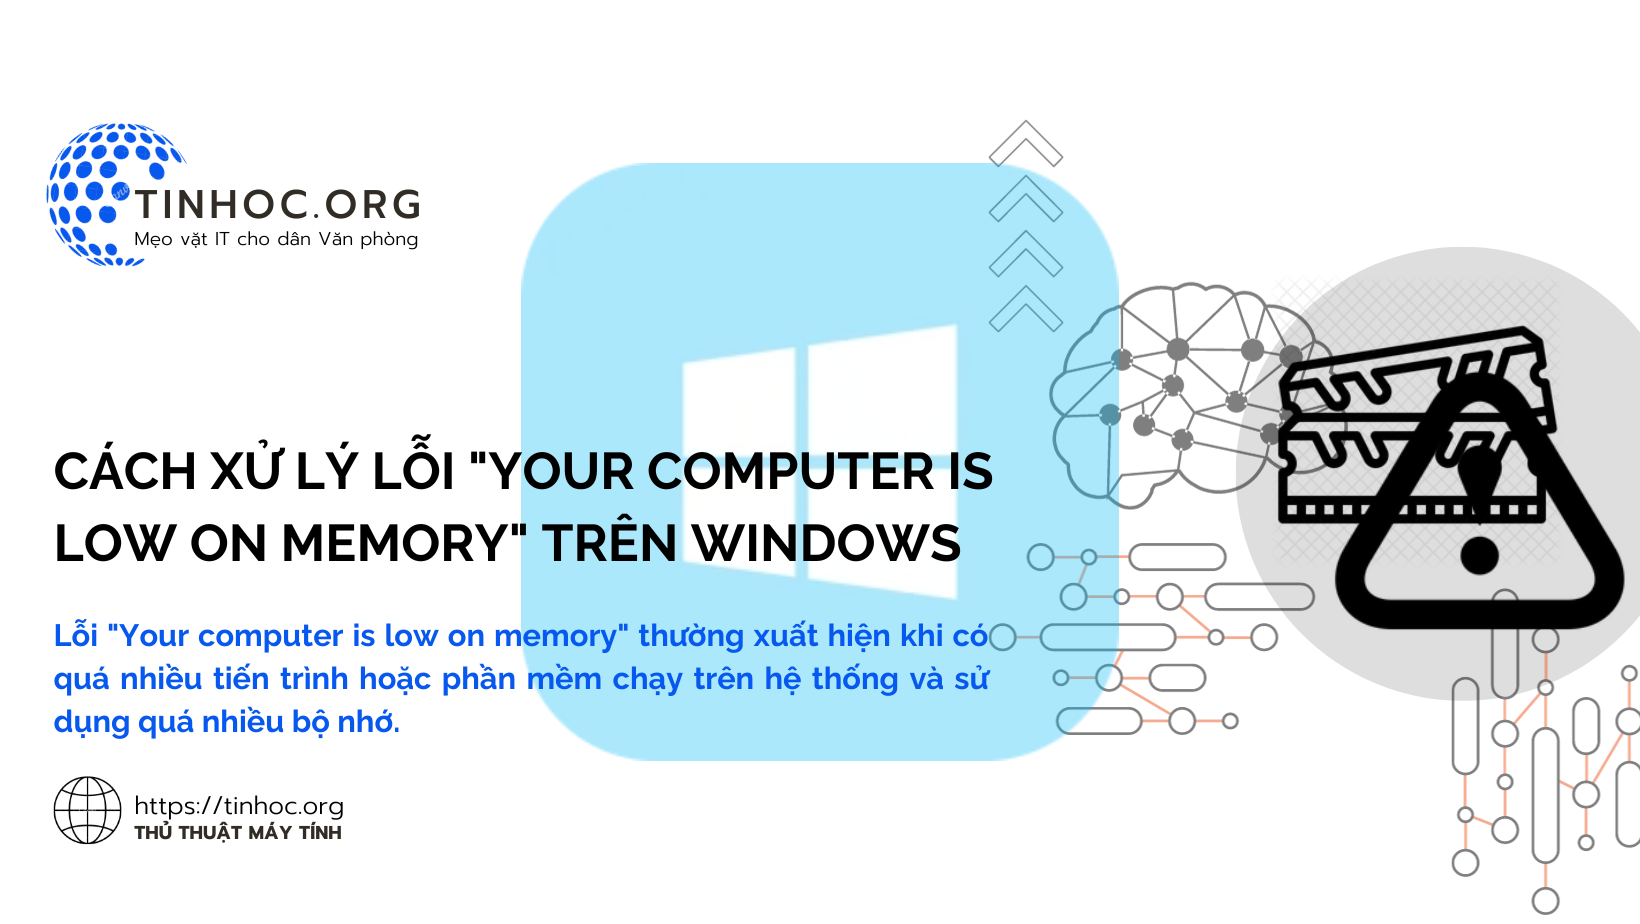 Cách xử lý lỗi "Your computer is low on memory" trên Windows